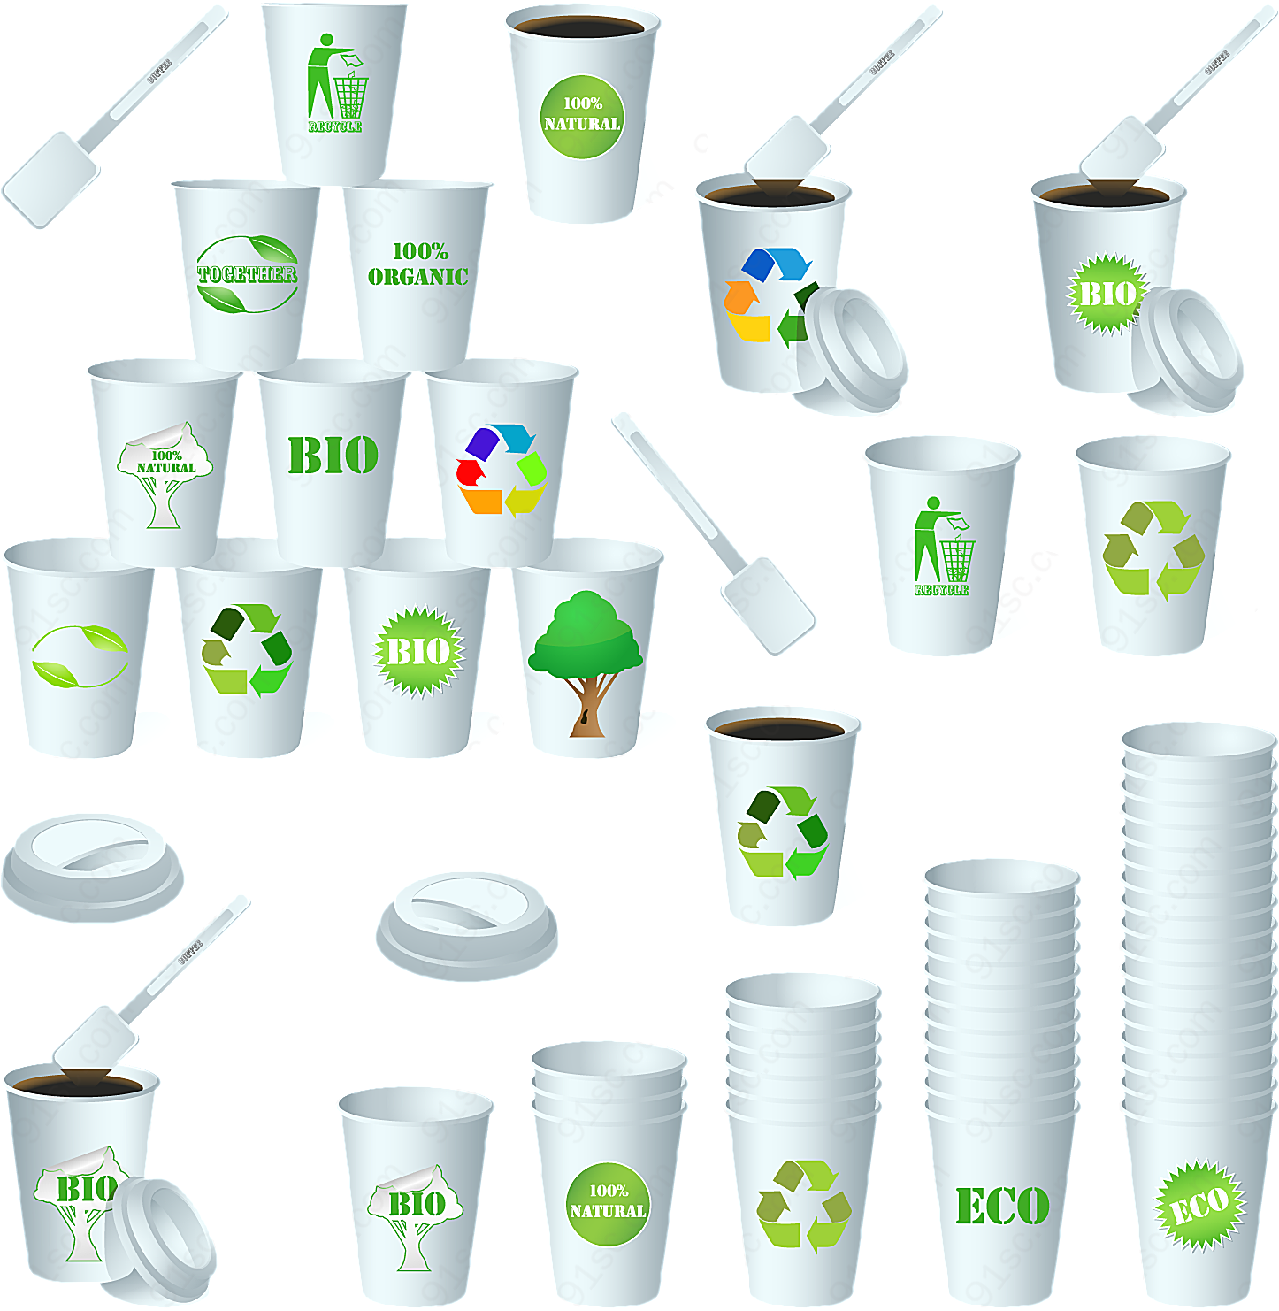 生态纸杯设计矢量生活用品